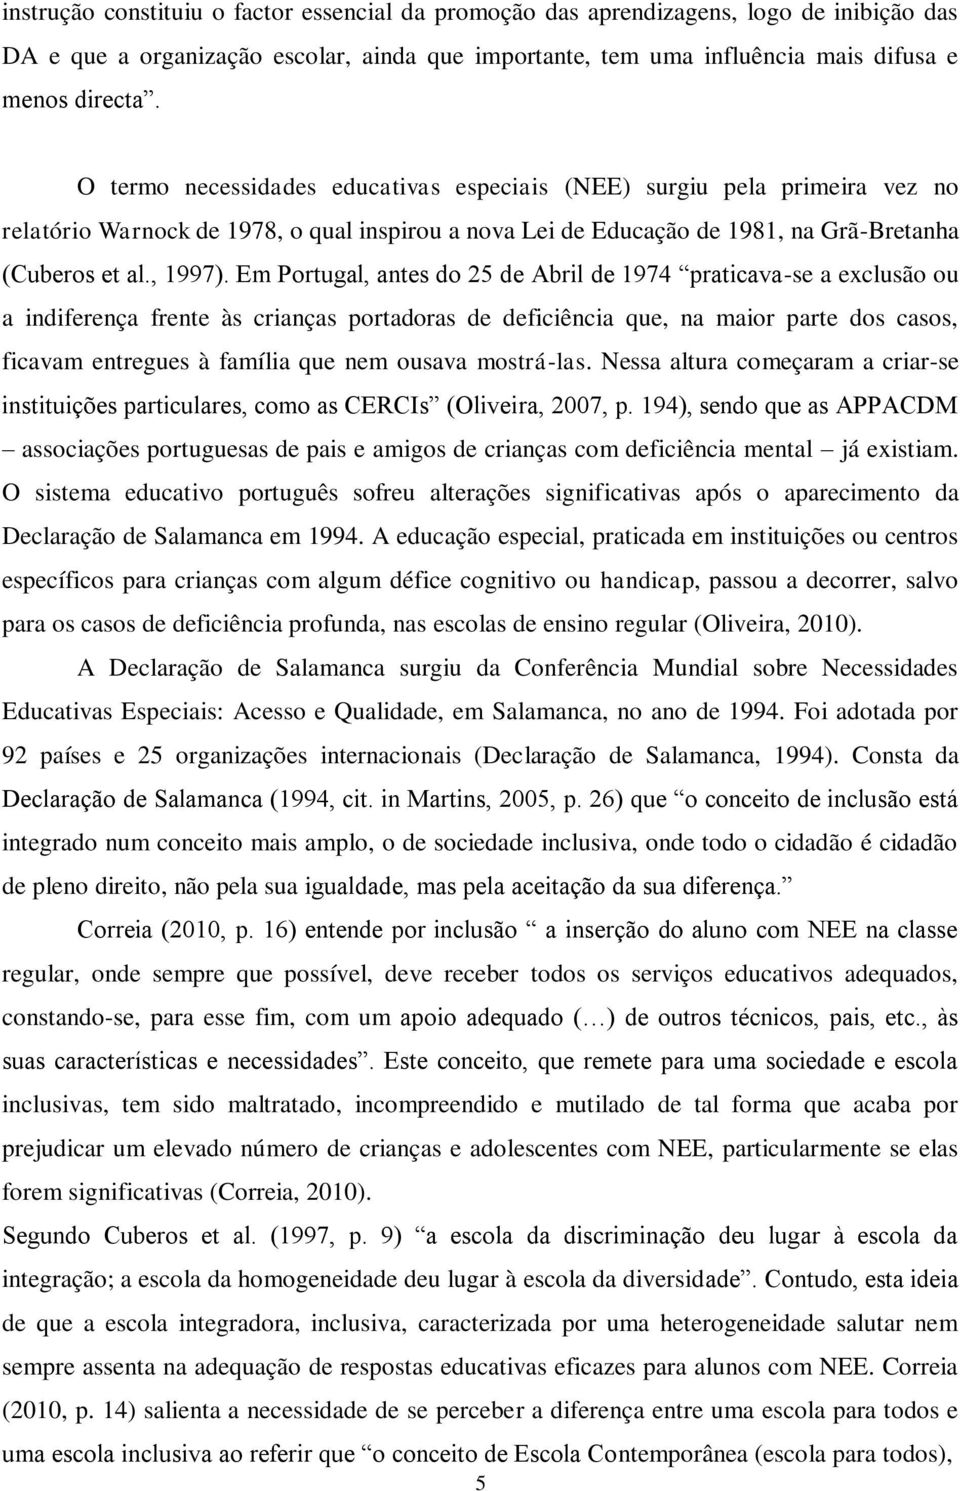 Em Portugal, antes do 25 de Abril de 1974 praticava-se a exclusão ou a indiferença frente às crianças portadoras de deficiência que, na maior parte dos casos, ficavam entregues à família que nem